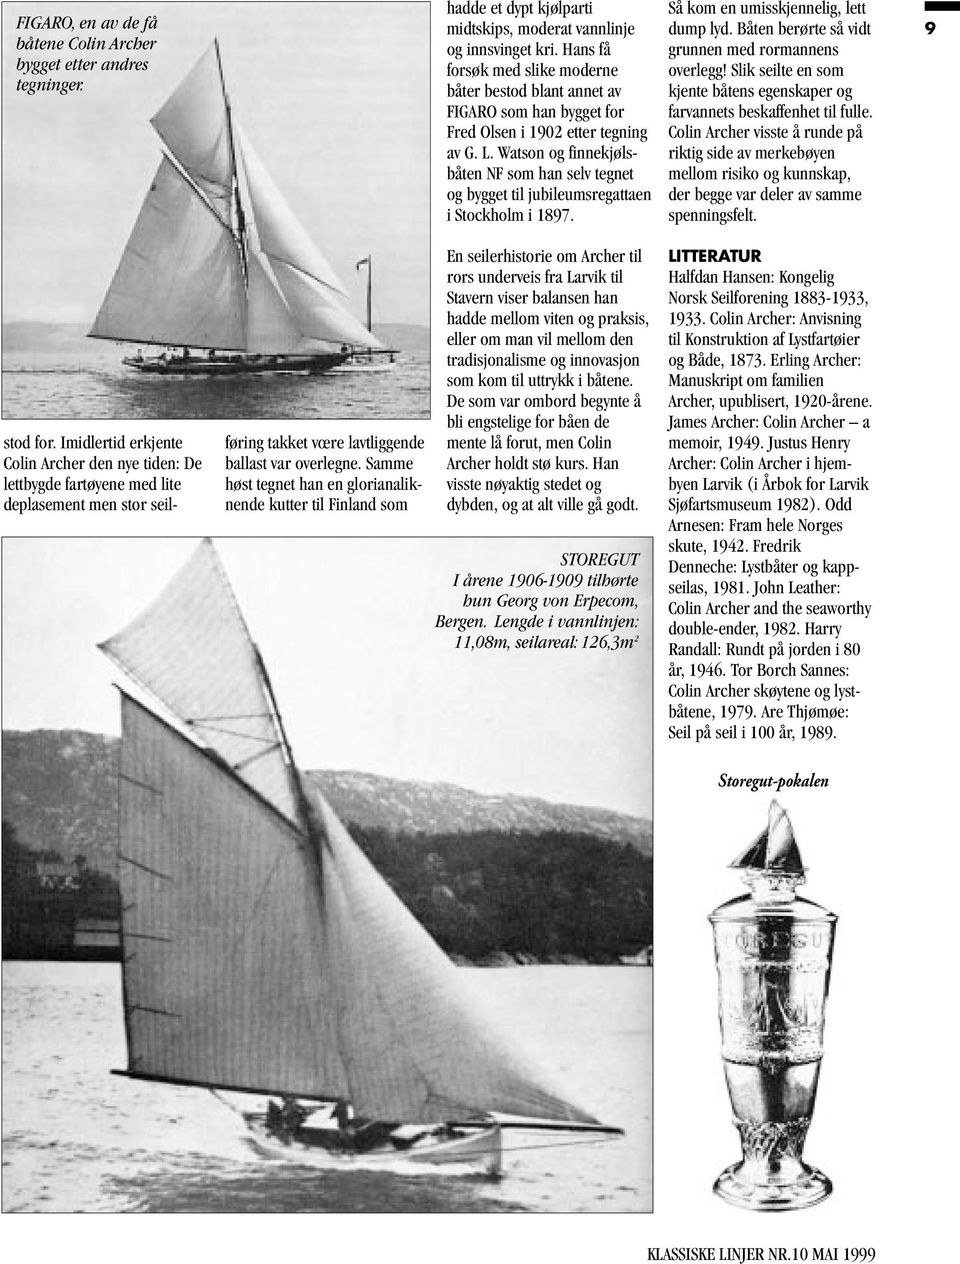 Watson og finnekjølsbåten NF som han selv tegnet og bygget til jubileumsregattaen i Stockholm i 1897. Så kom en umisskjennelig, lett dump lyd. Båten berørte så vidt grunnen med rormannens overlegg!